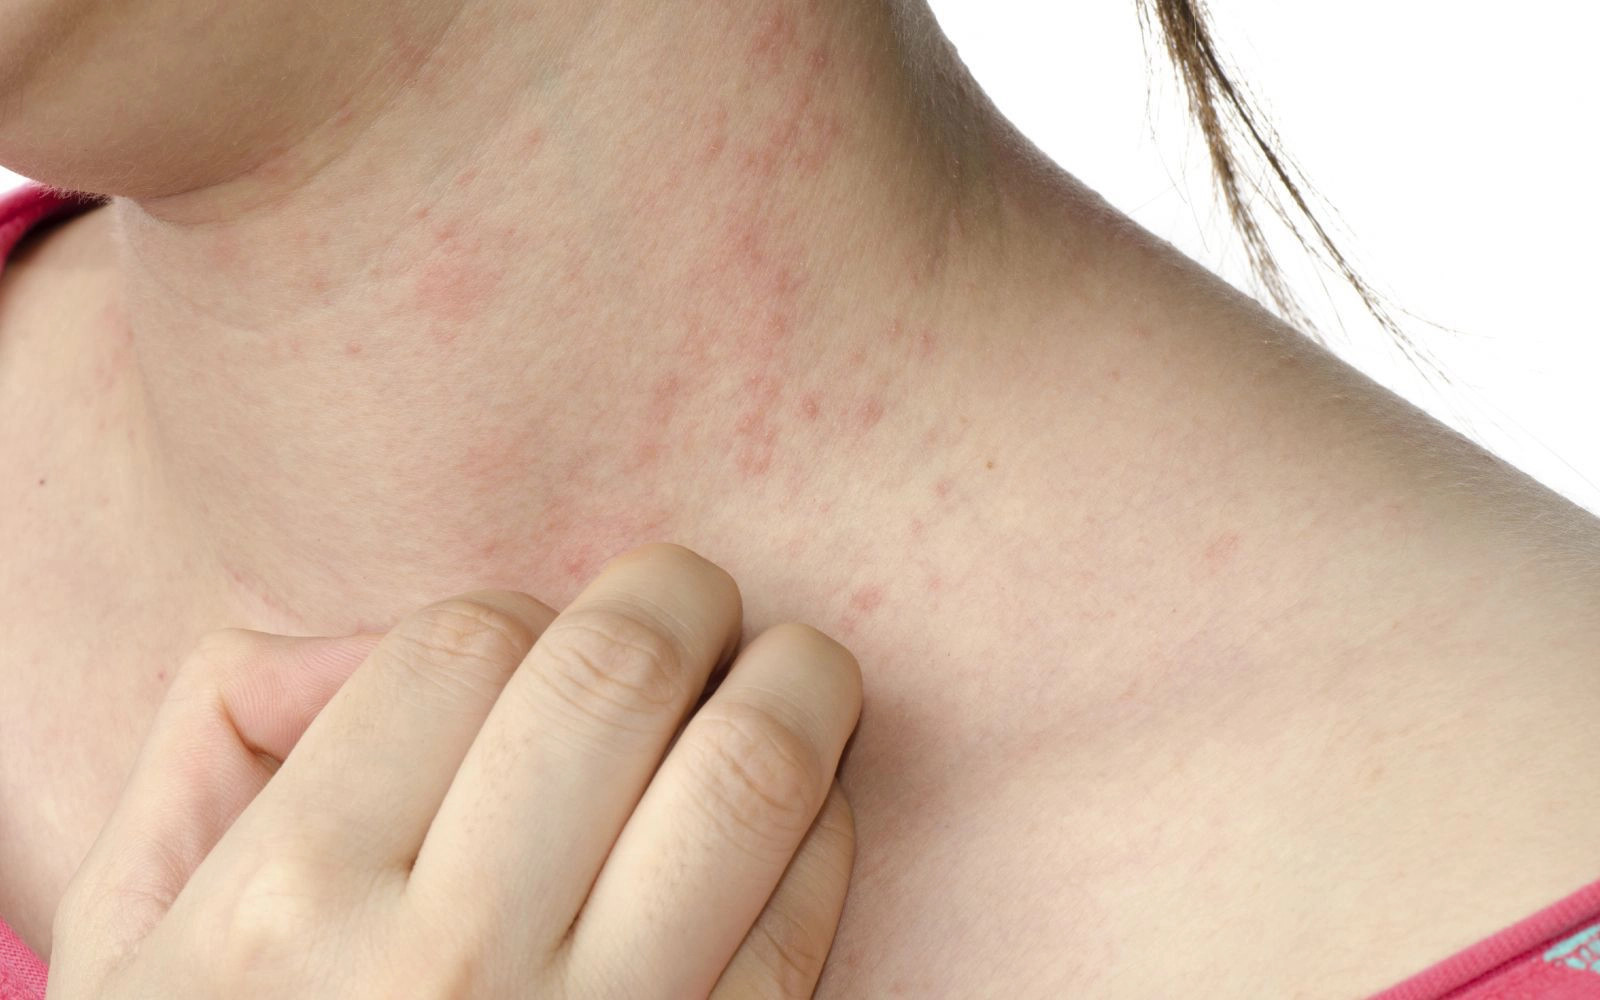 Kem trị sẹo Contractubex có thể gây ra các tác dụng phụ như dị ứng, viêm da